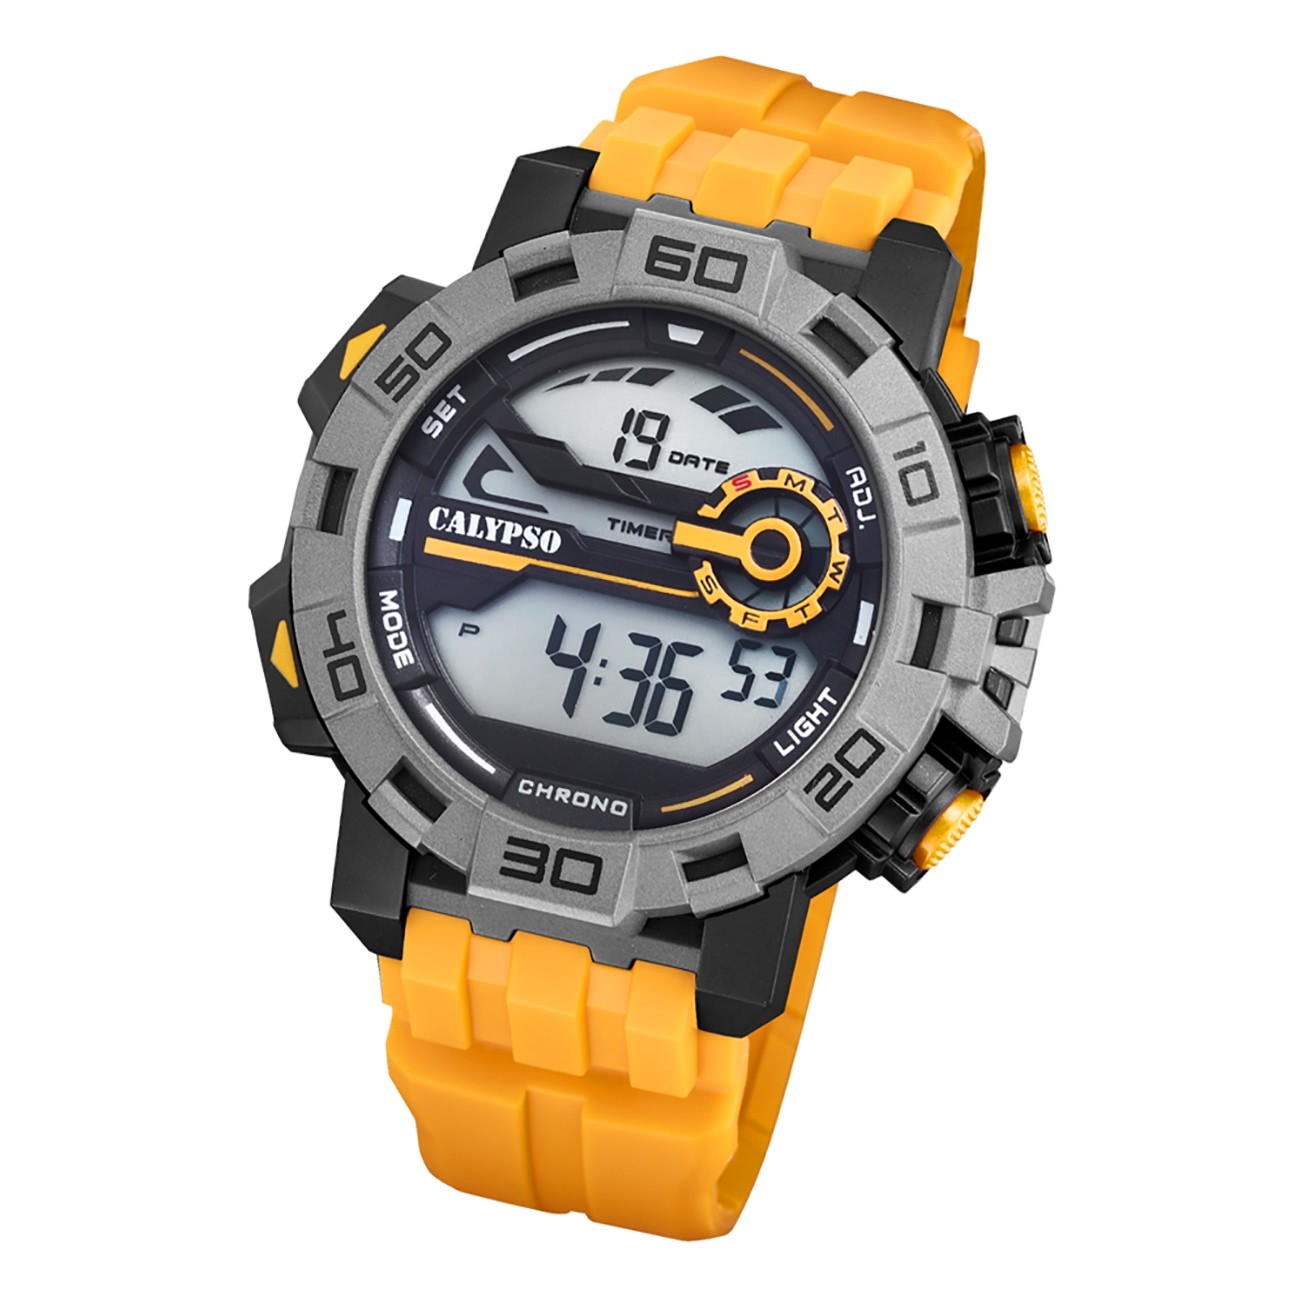 Calypso Herren Armbanduhr gelb Kunststoff Digital K5809/1 UK5809/1 Outdoor